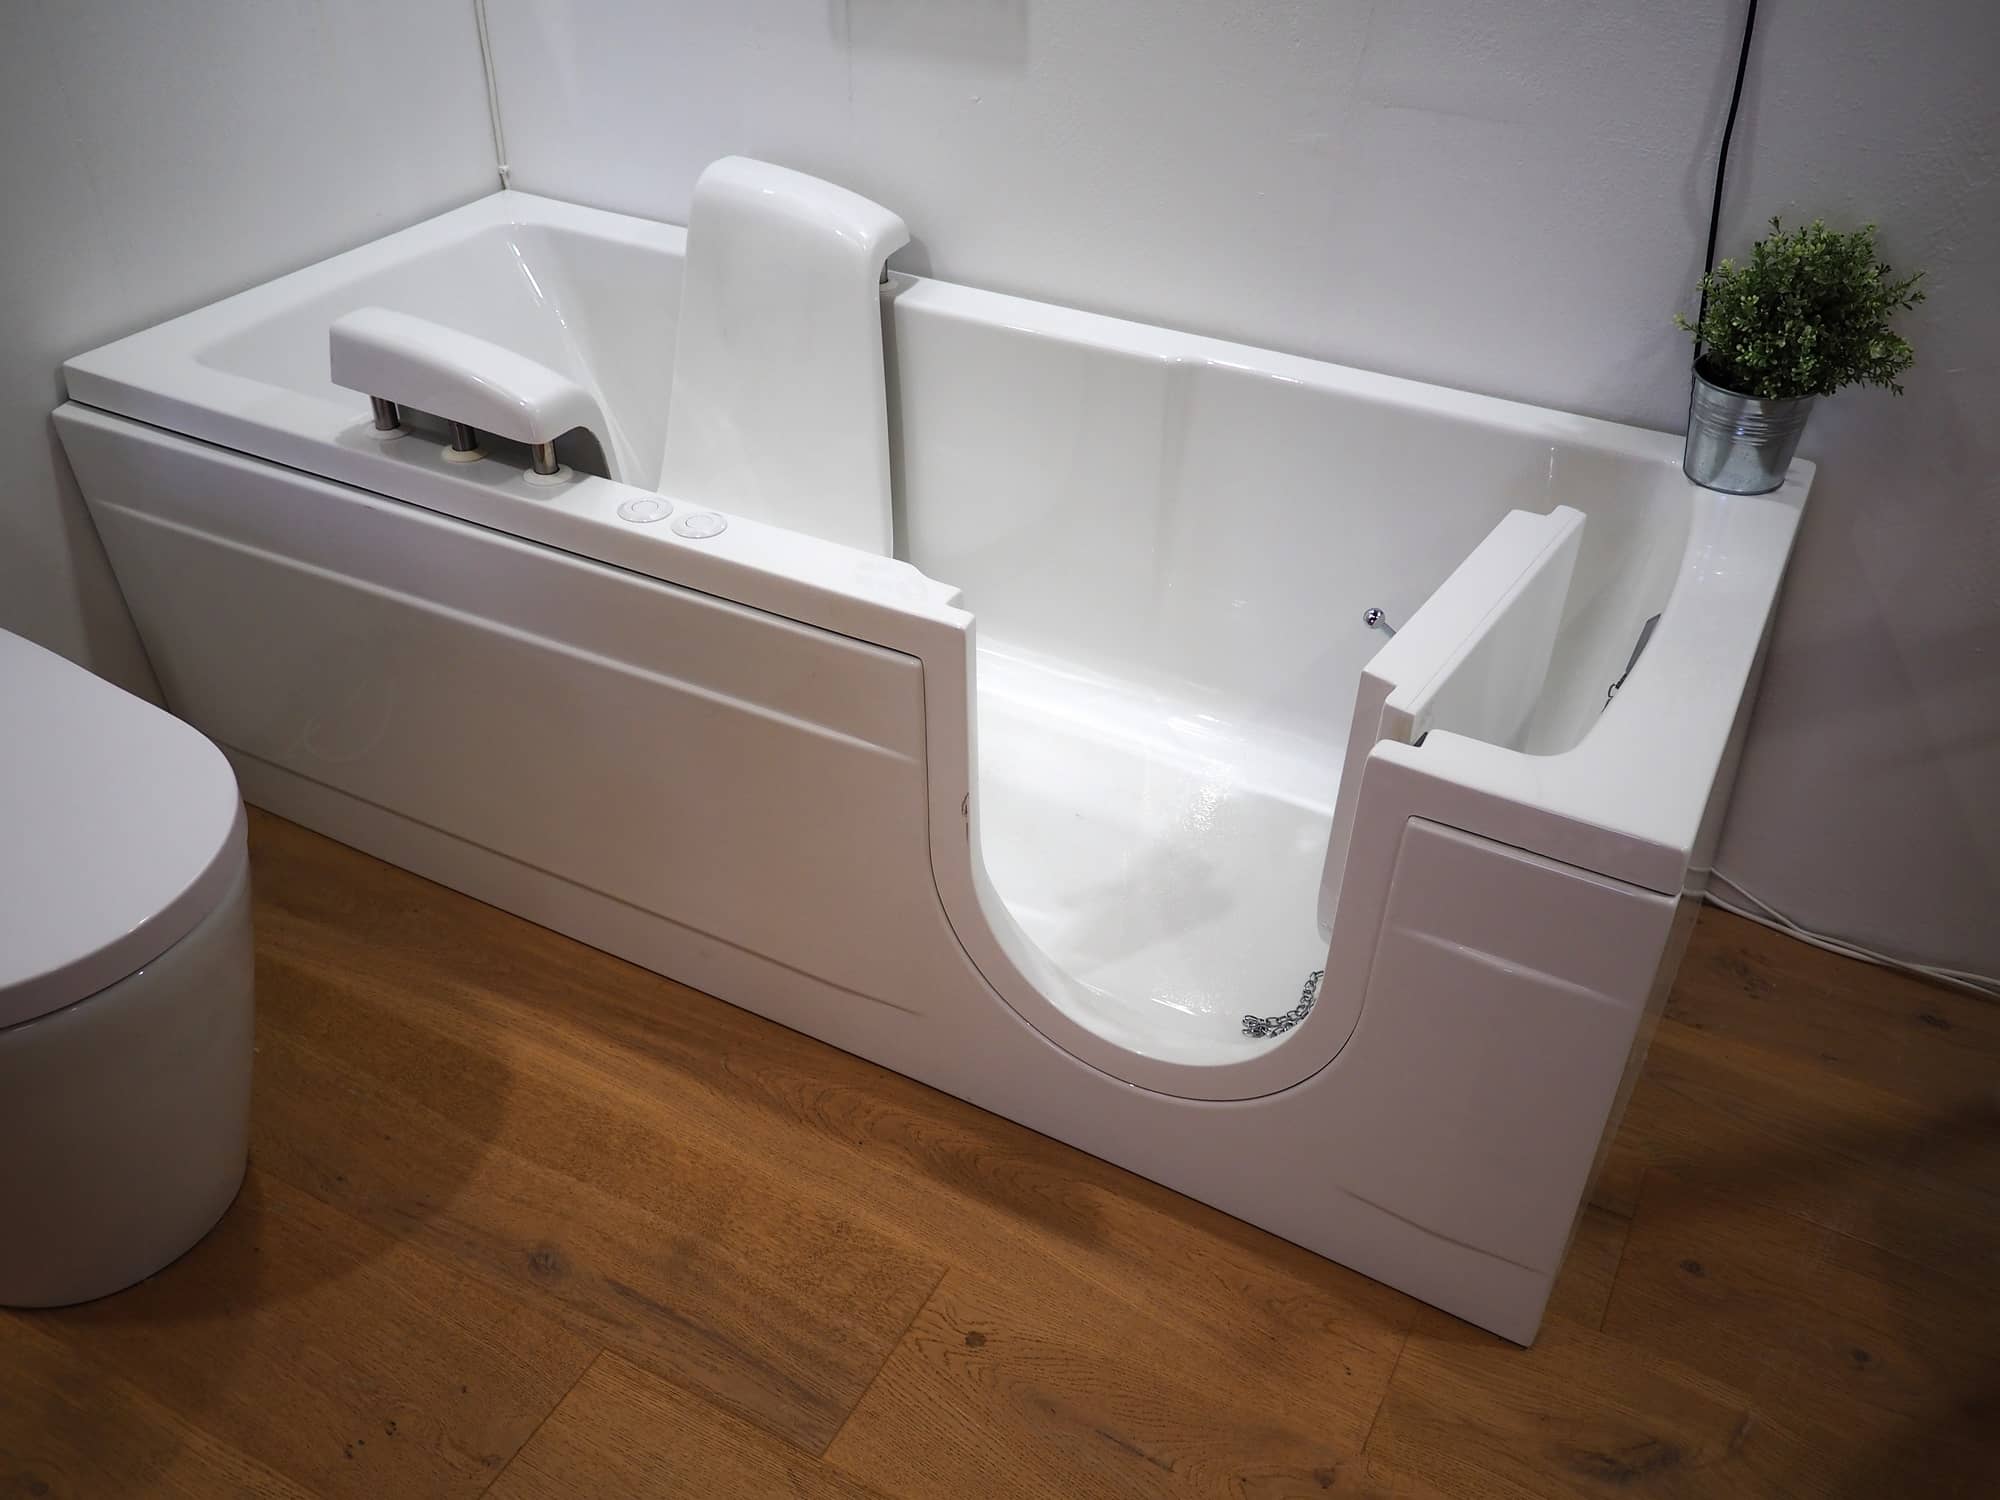 Rénovation d'une salle de bain avec baignoire ergonomique et facilité d'accès